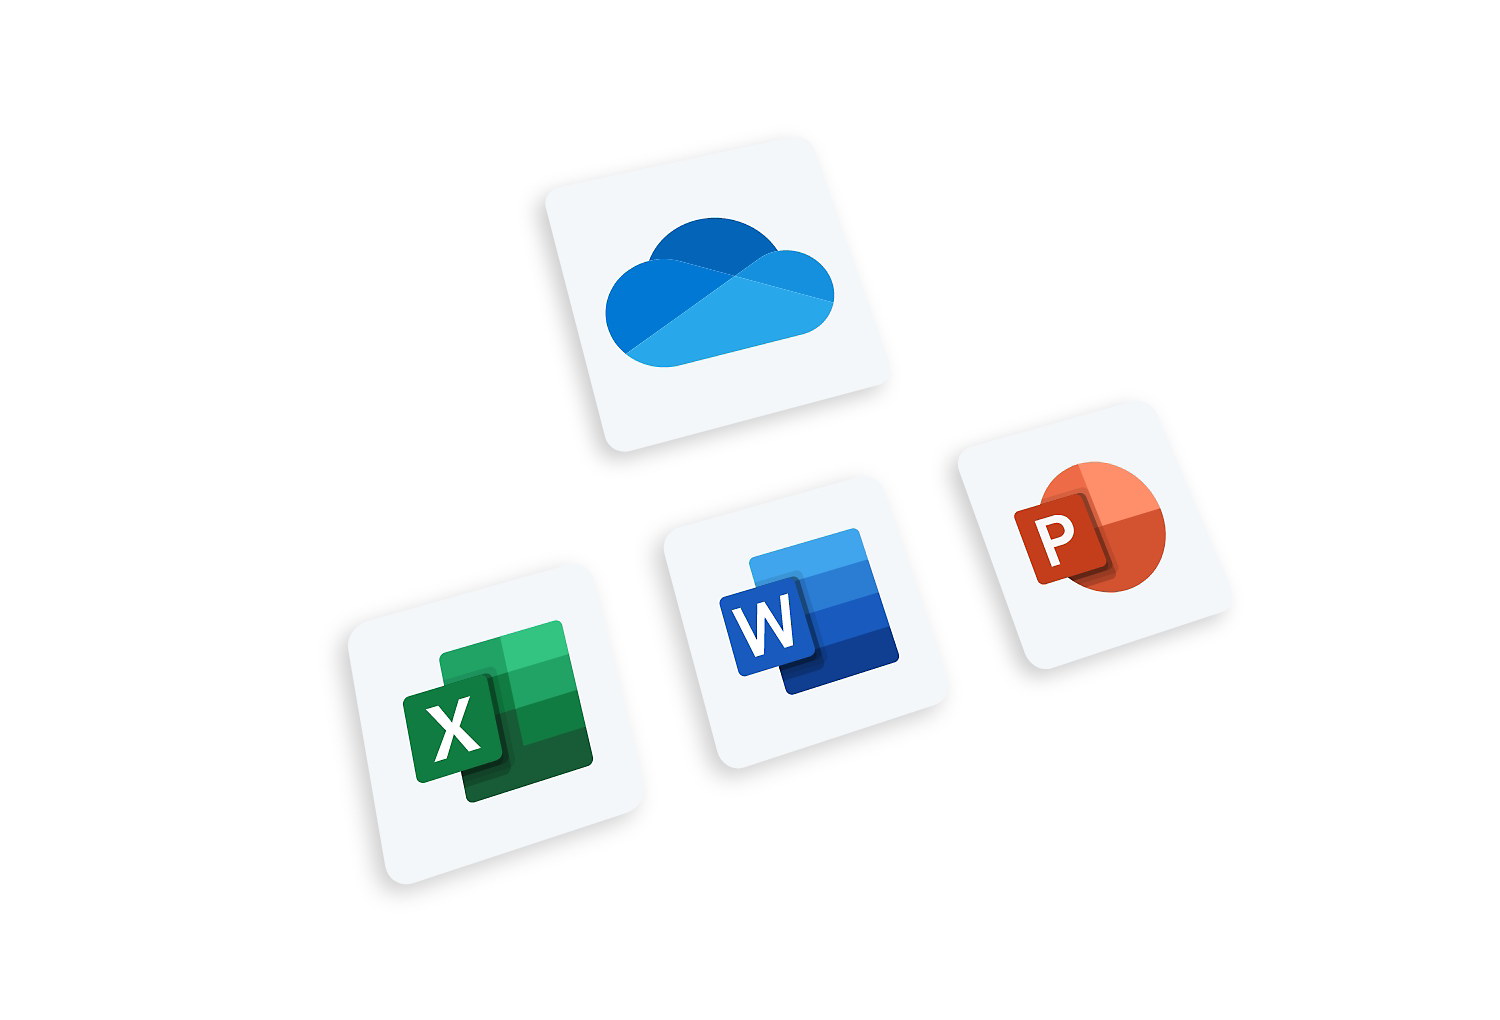 Lưu trữ đám mây cá nhân - Microsoft OneDrive: Sử dụng Microsoft OneDrive để lưu trữ và chia sẻ tài liệu cá nhân của bạn. Với tính năng đồng bộ hóa dữ liệu và lưu trữ đám mây, bạn có thể truy cập tài liệu của mình từ bất kỳ nơi đâu và trên bất kỳ thiết bị nào. Không còn lo lắng về việc mất dữ liệu nữa với Microsoft OneDrive.